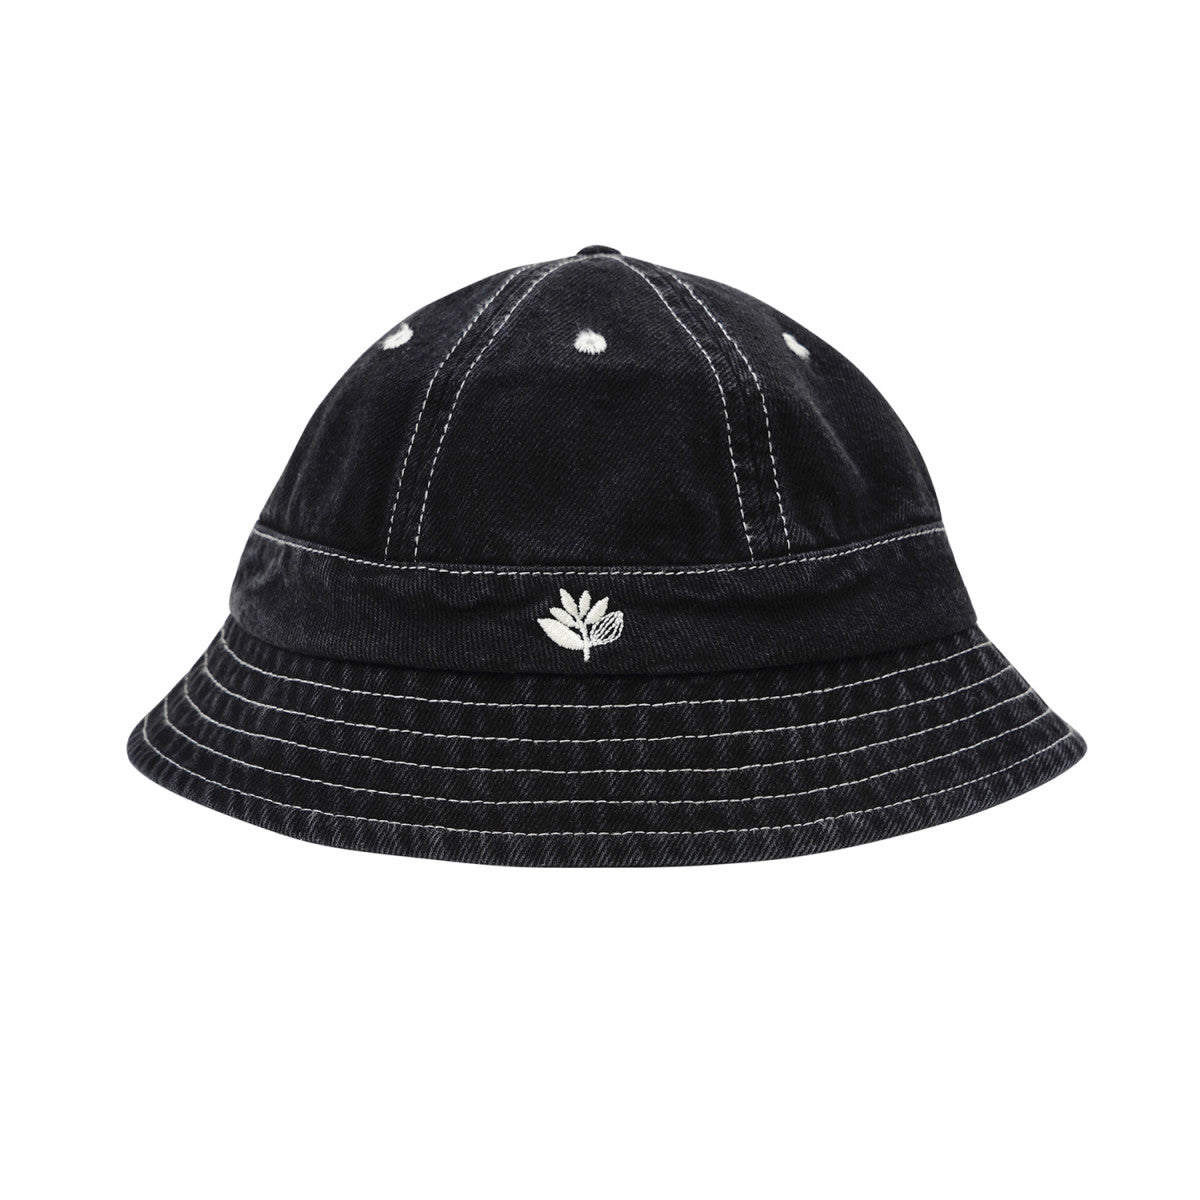 Stitch Bucket Hat Black Denim